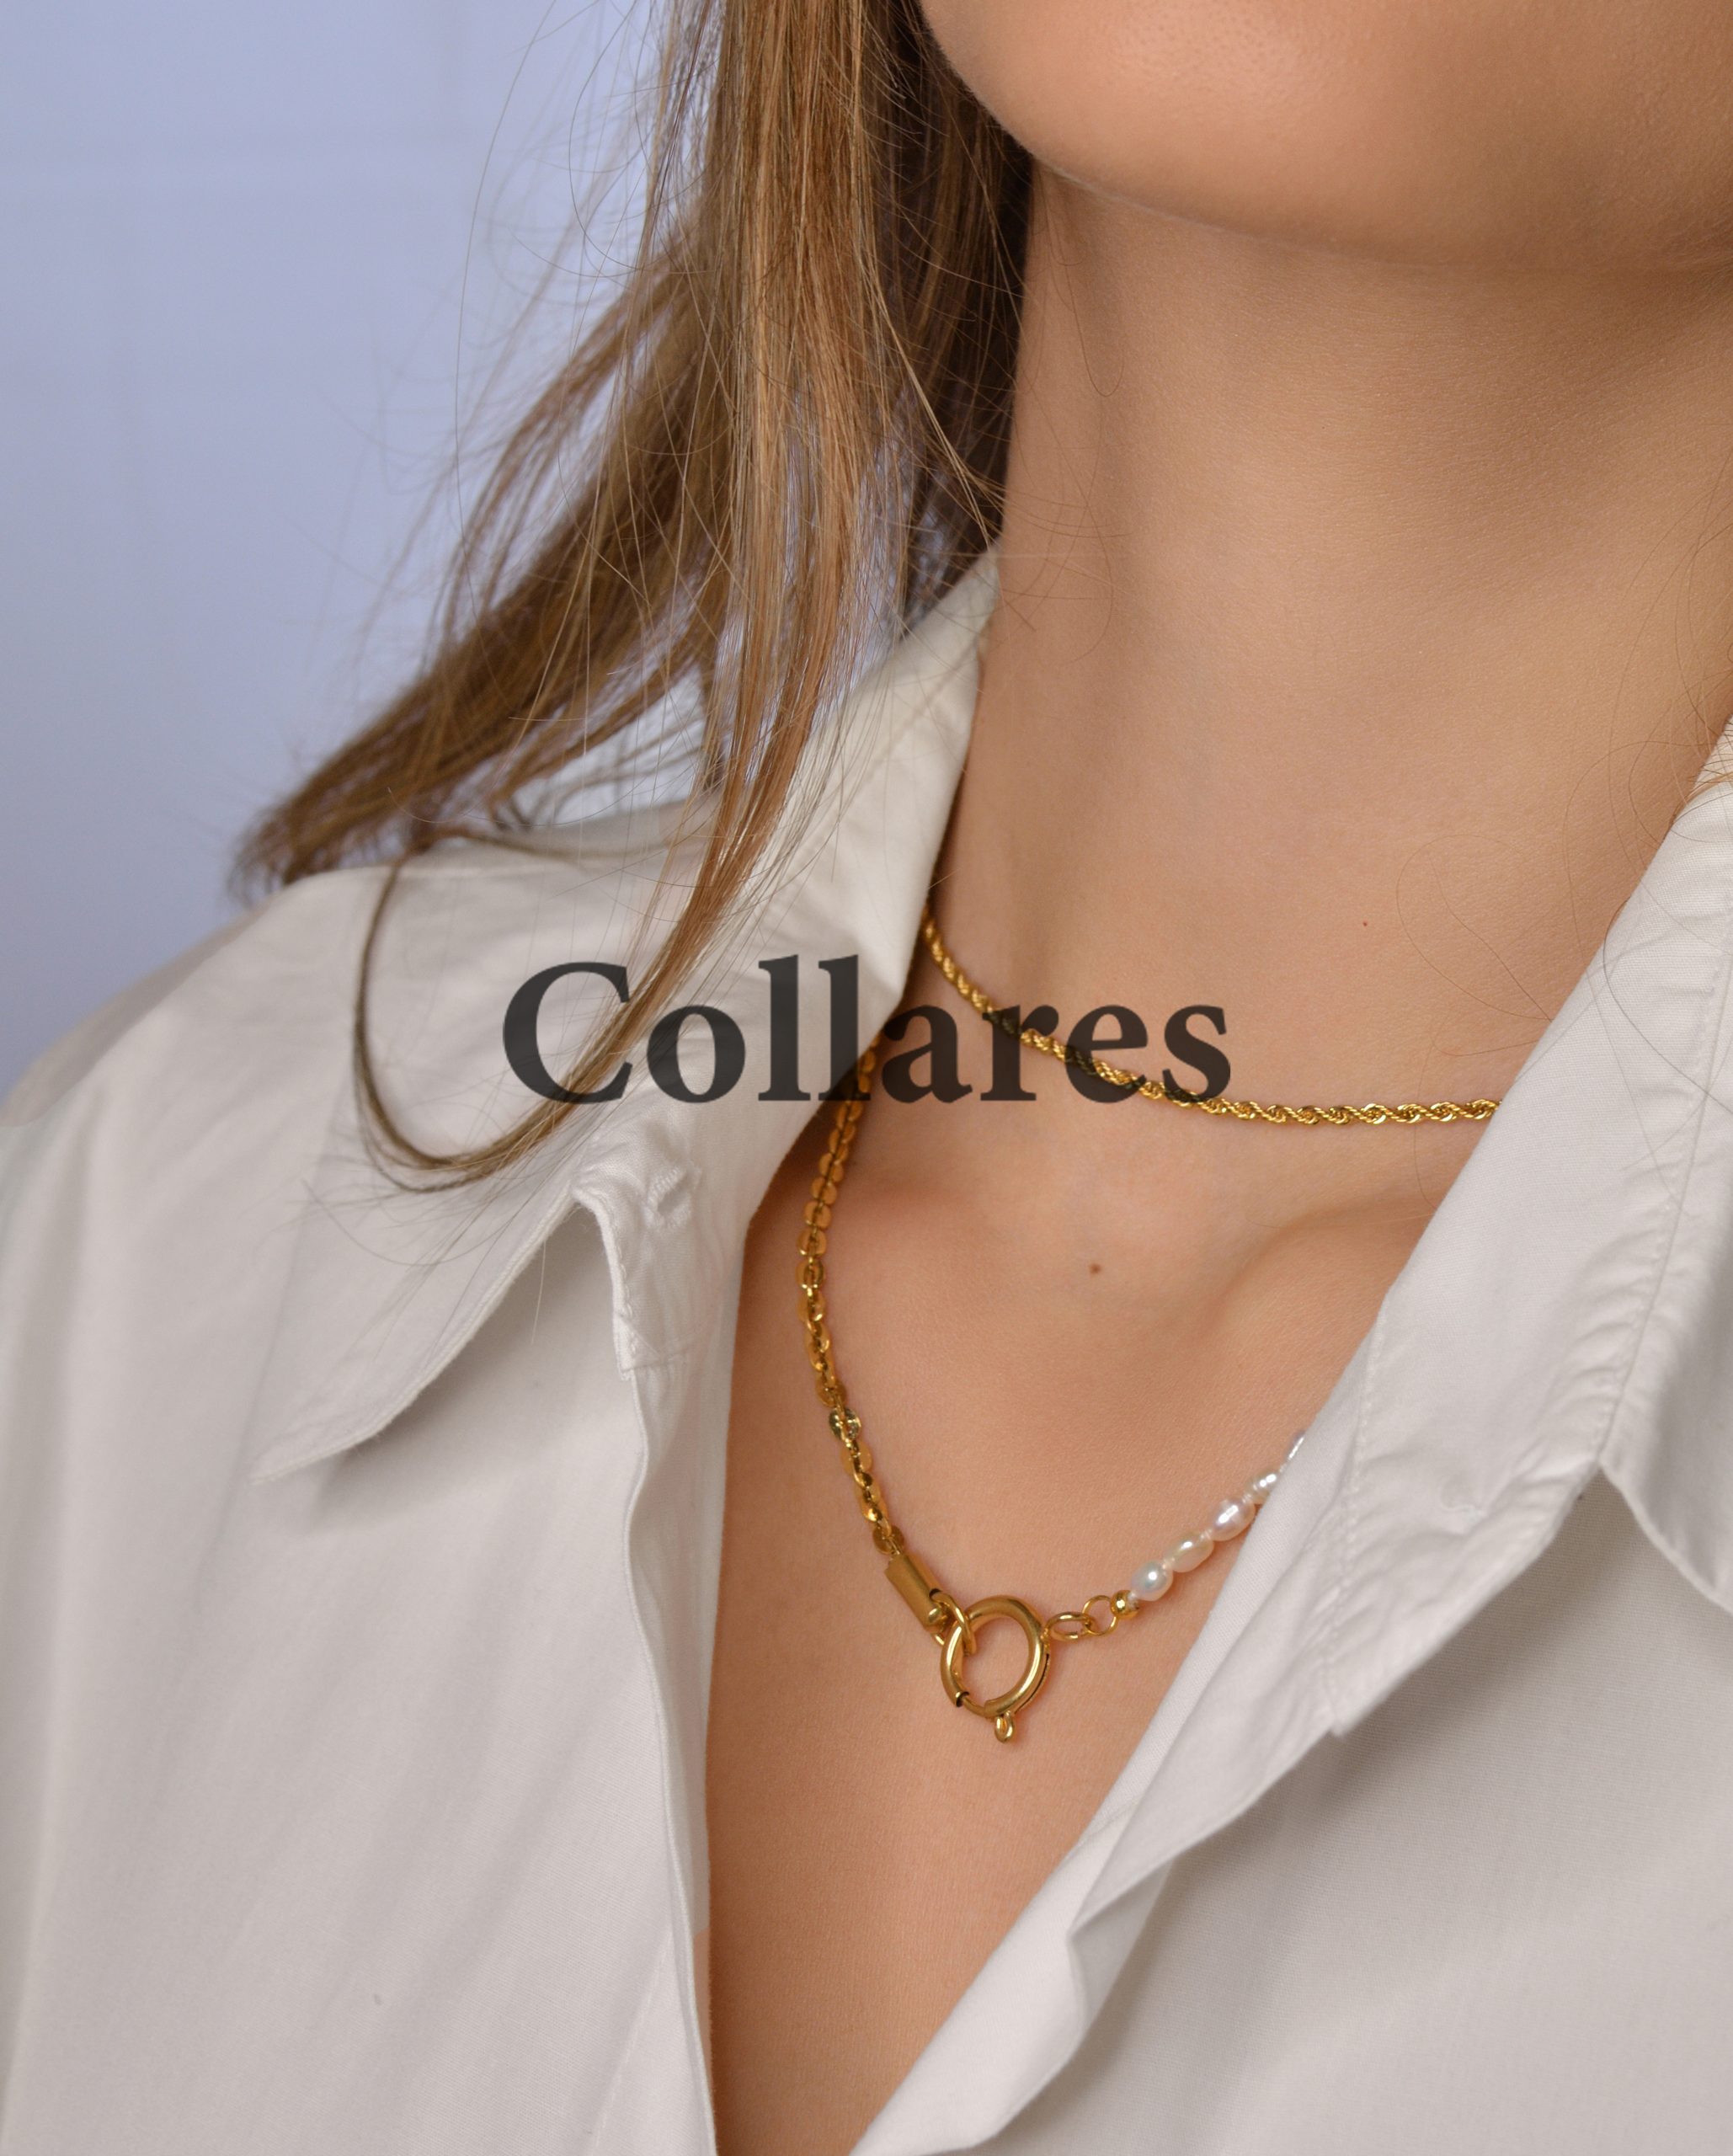 Collares Syrenias Jewelry 